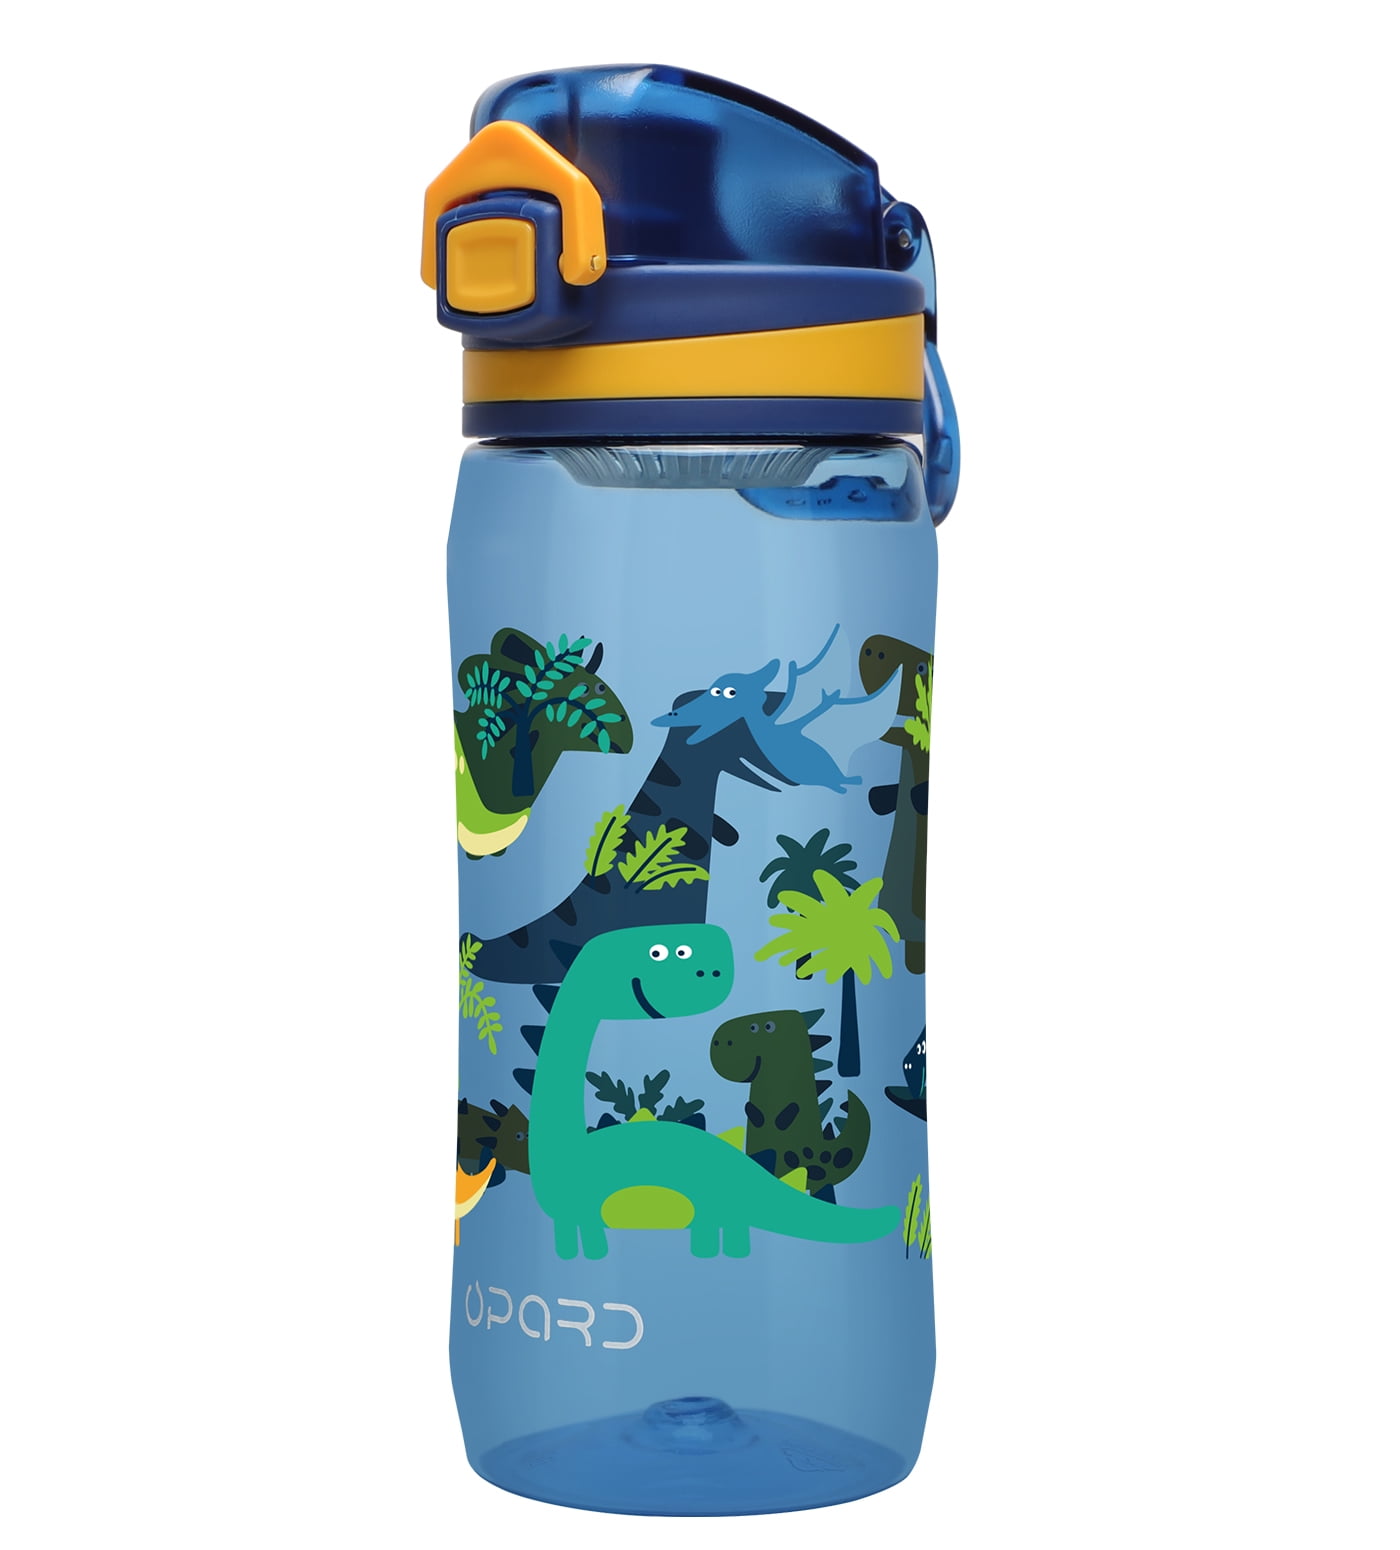 Kids Water Bottle - 10 oz double wall Tritan plastic Kids Water Bottle